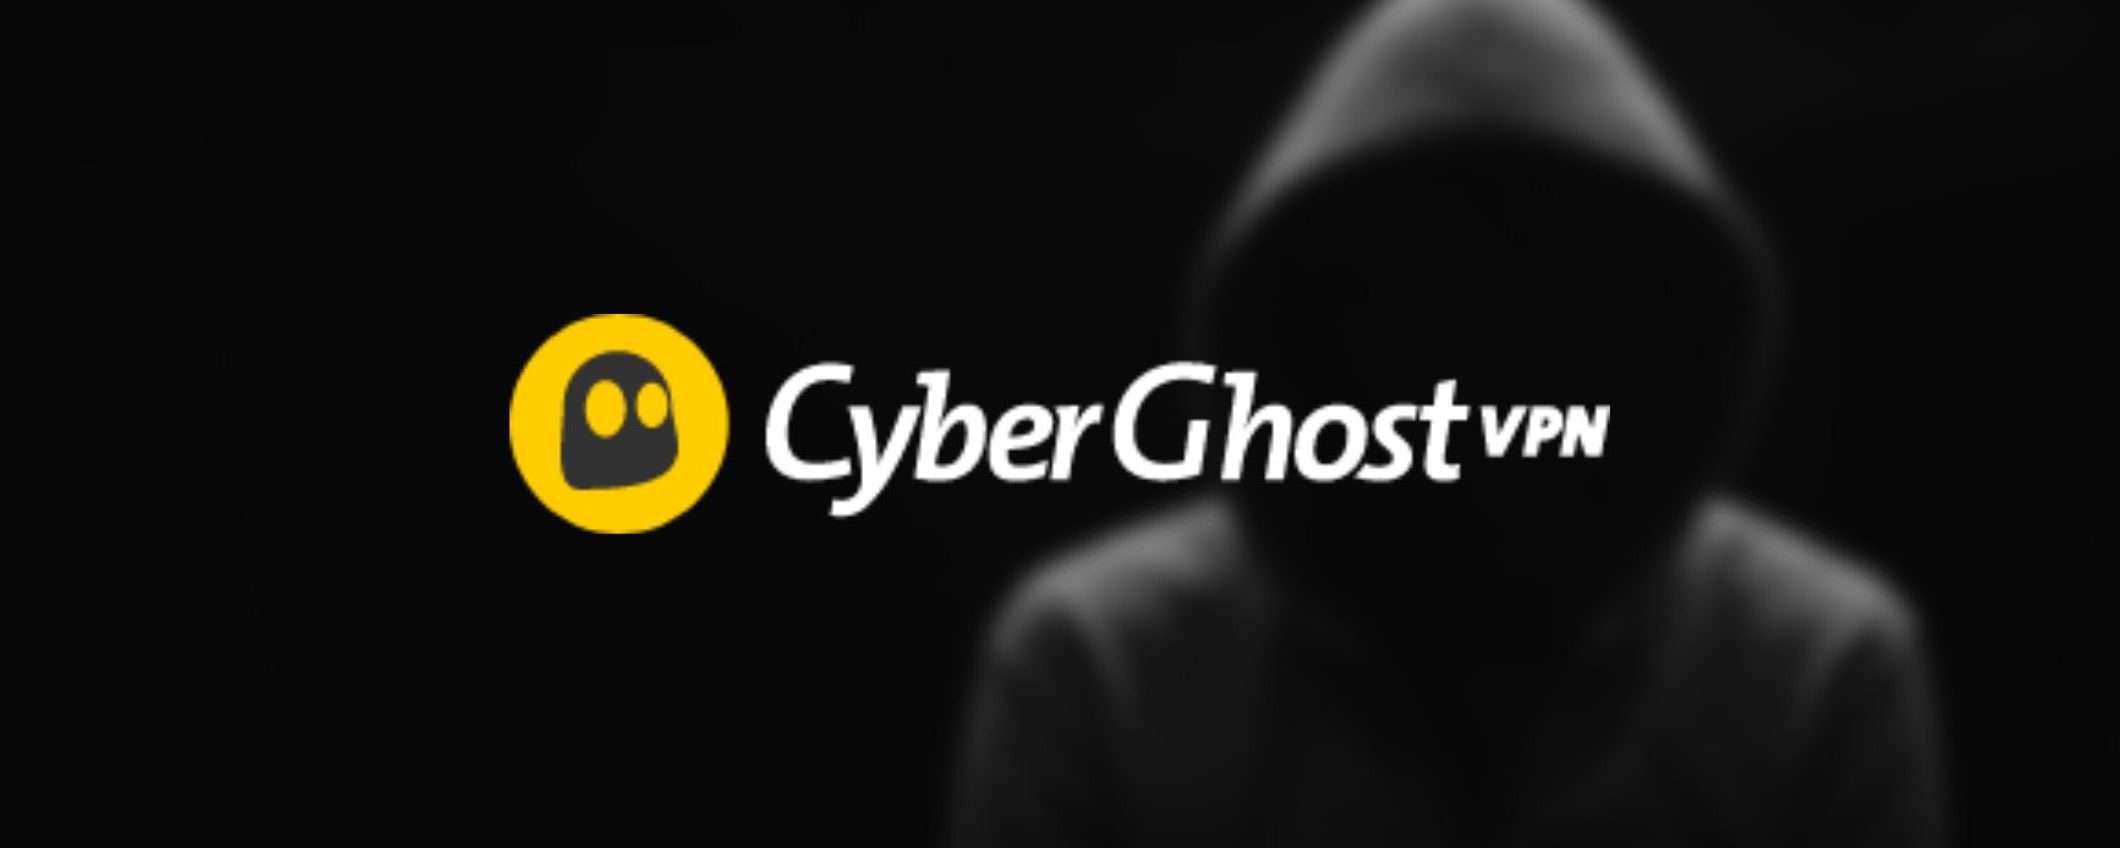 Non perdere l'occasione dell'anno: CyberGhost scontata dell’83% + 4 mesi gratis